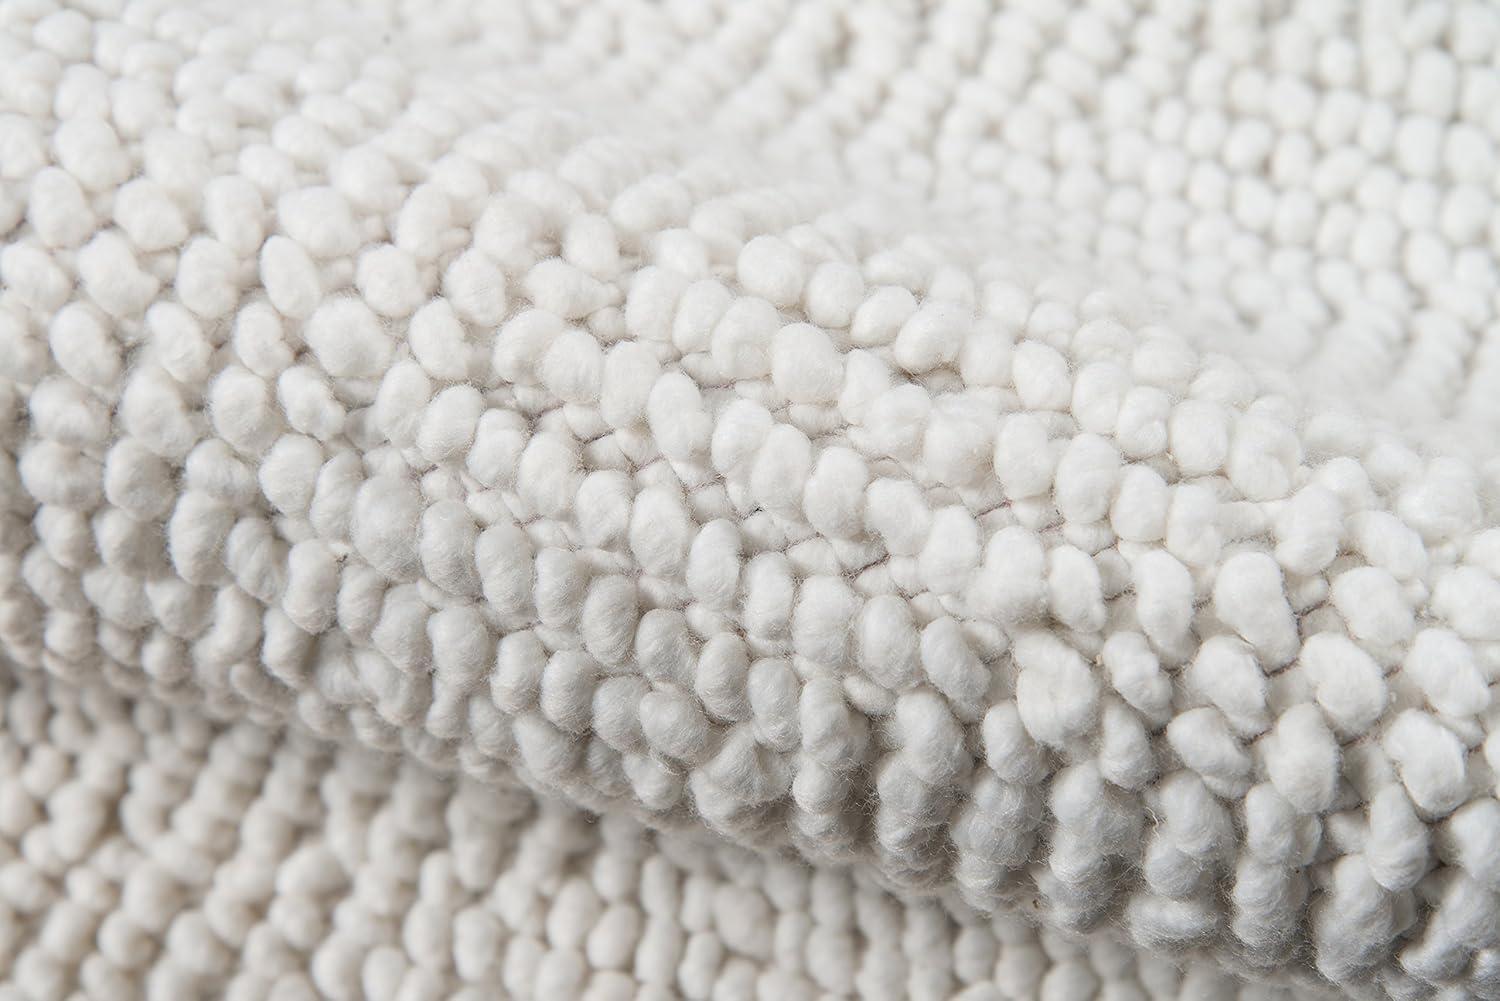 Ivory Herringbone Handwoven Wool & Synthetic 3'9" x 5'9" Rug